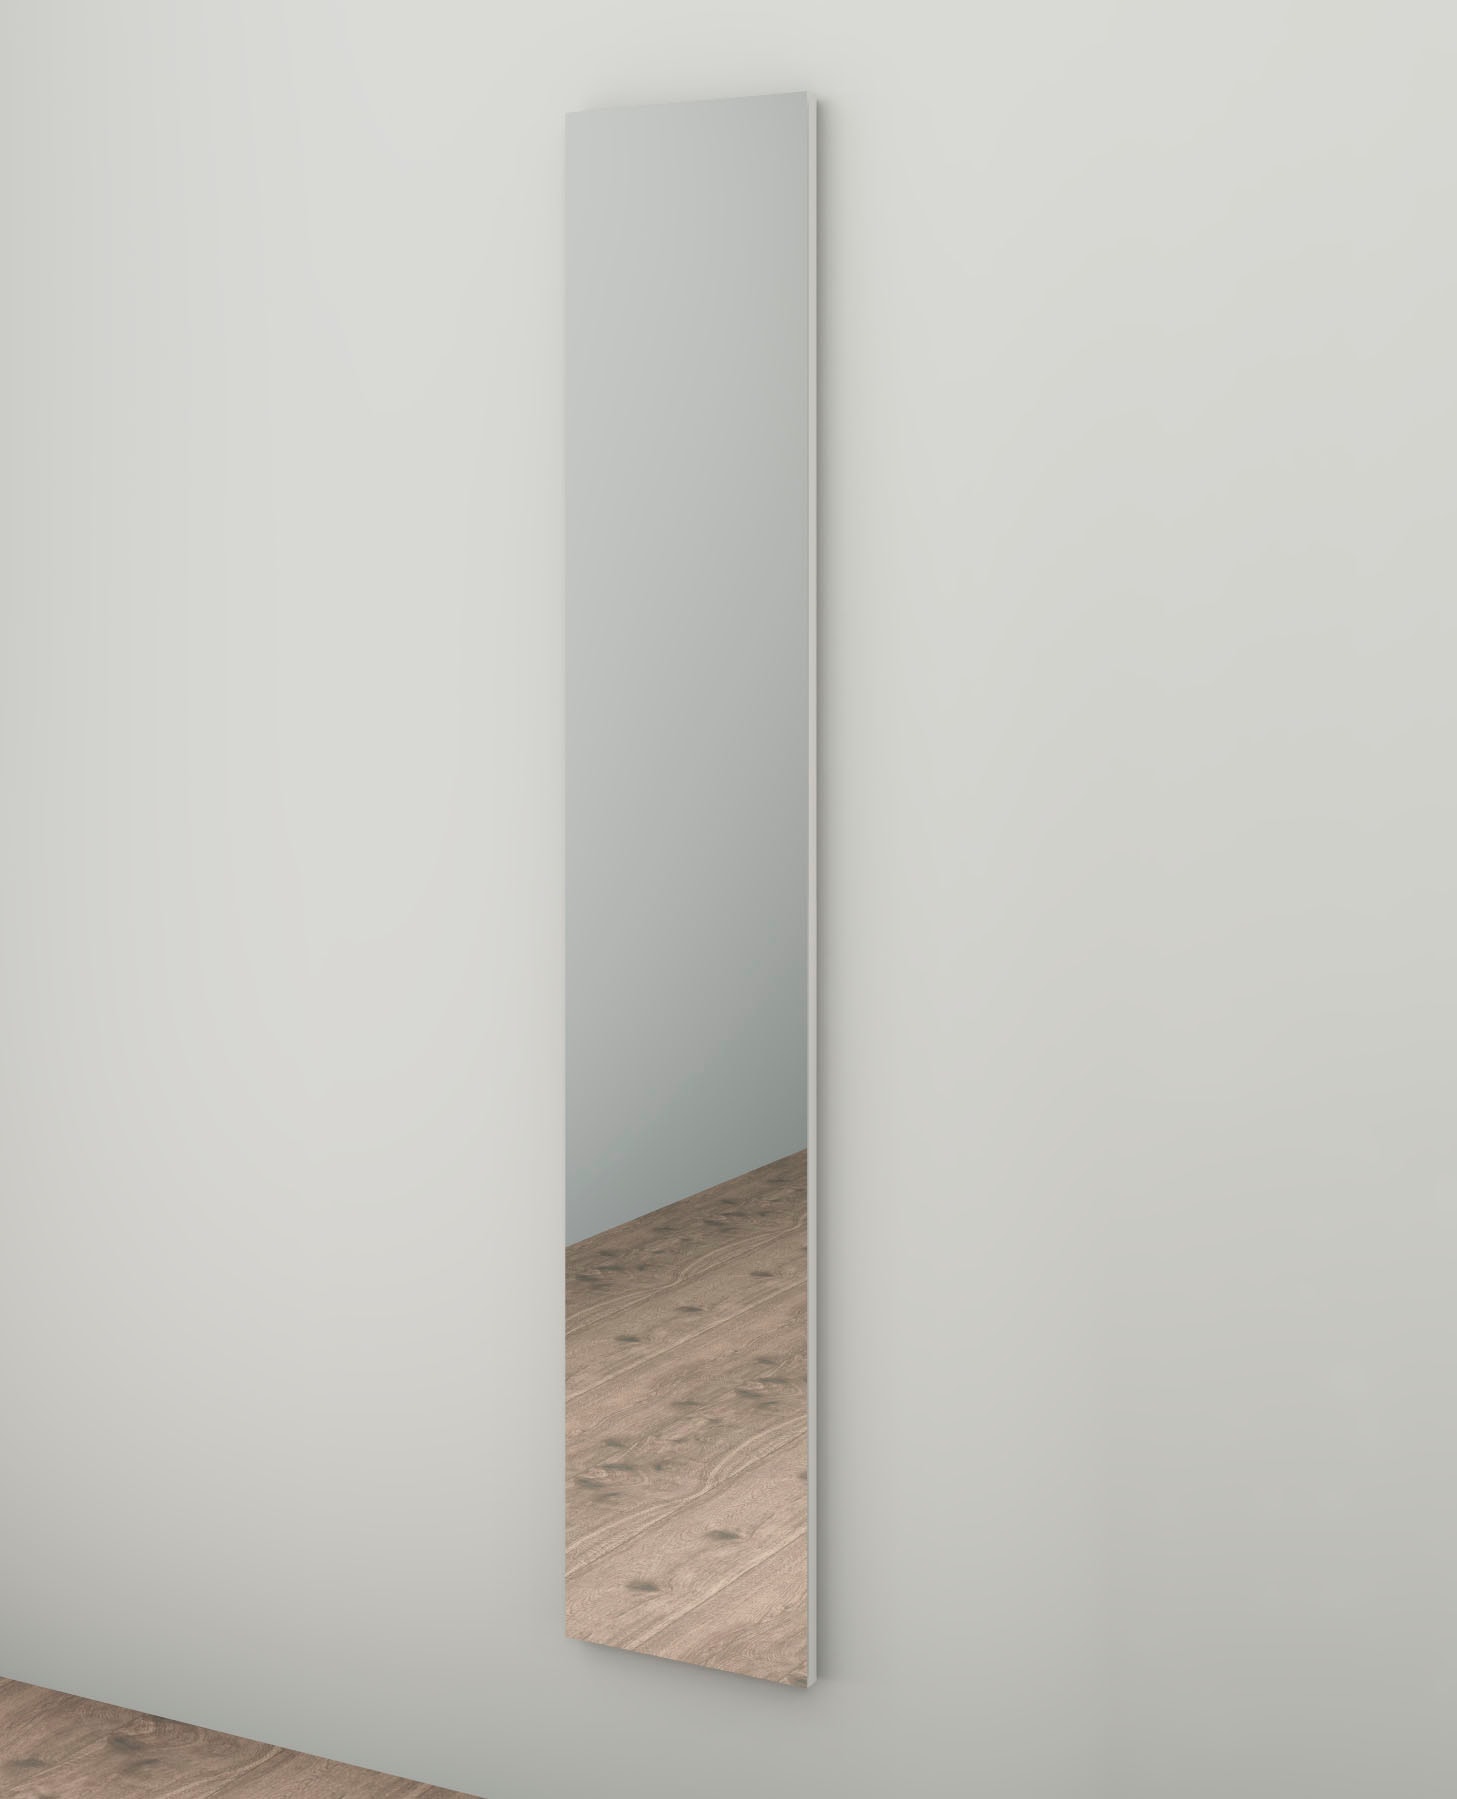 borchardt Möbel Wandspiegel »Vaasa«, Breite 24 cm